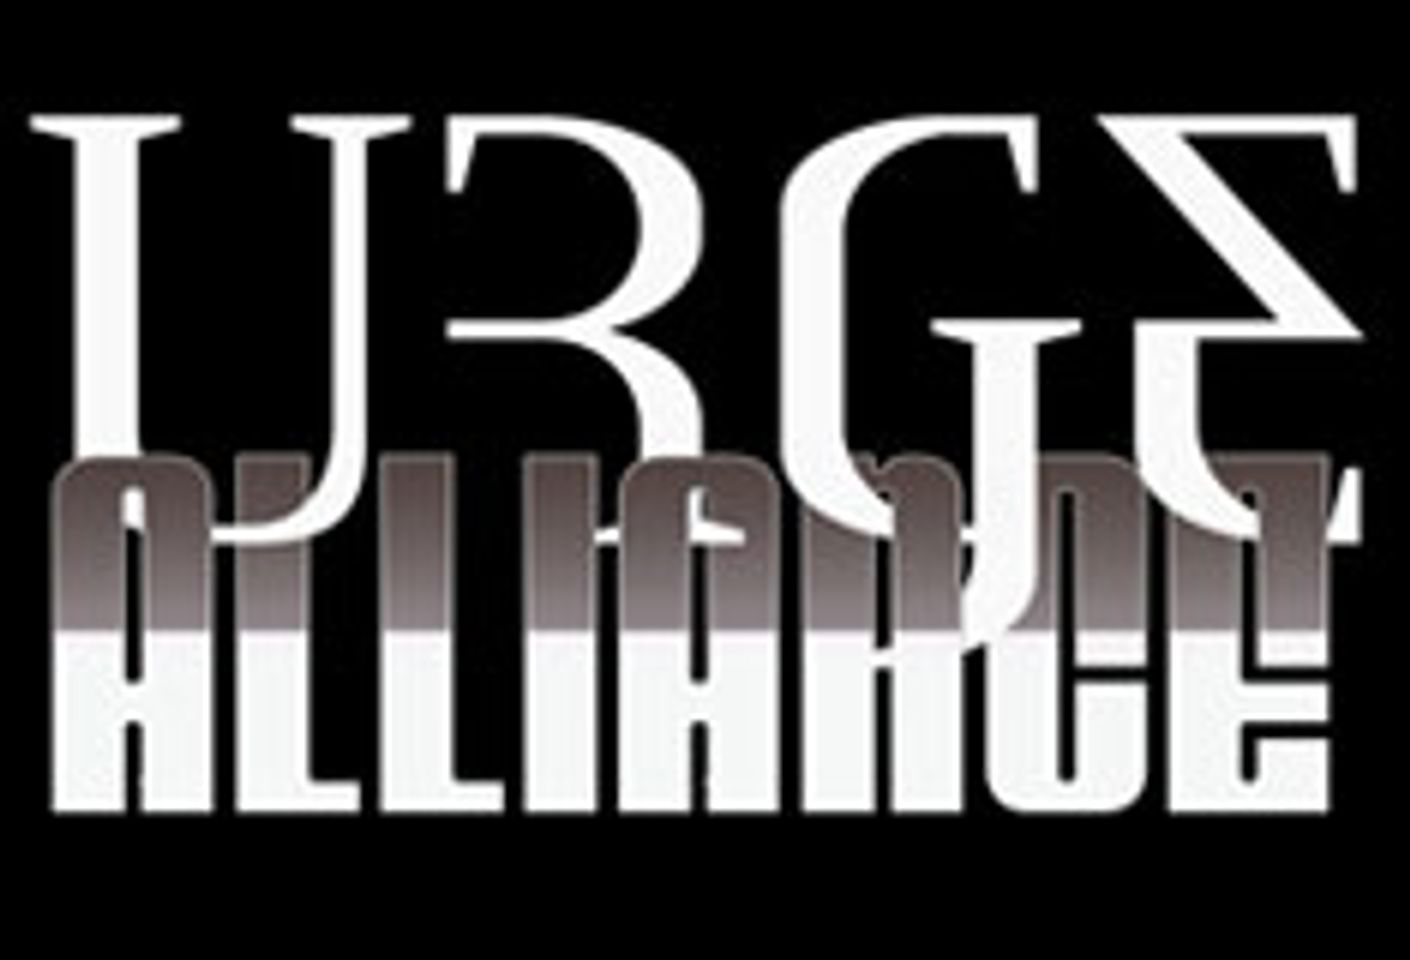 Urge Alliance Launches IdolizeMyAss.com